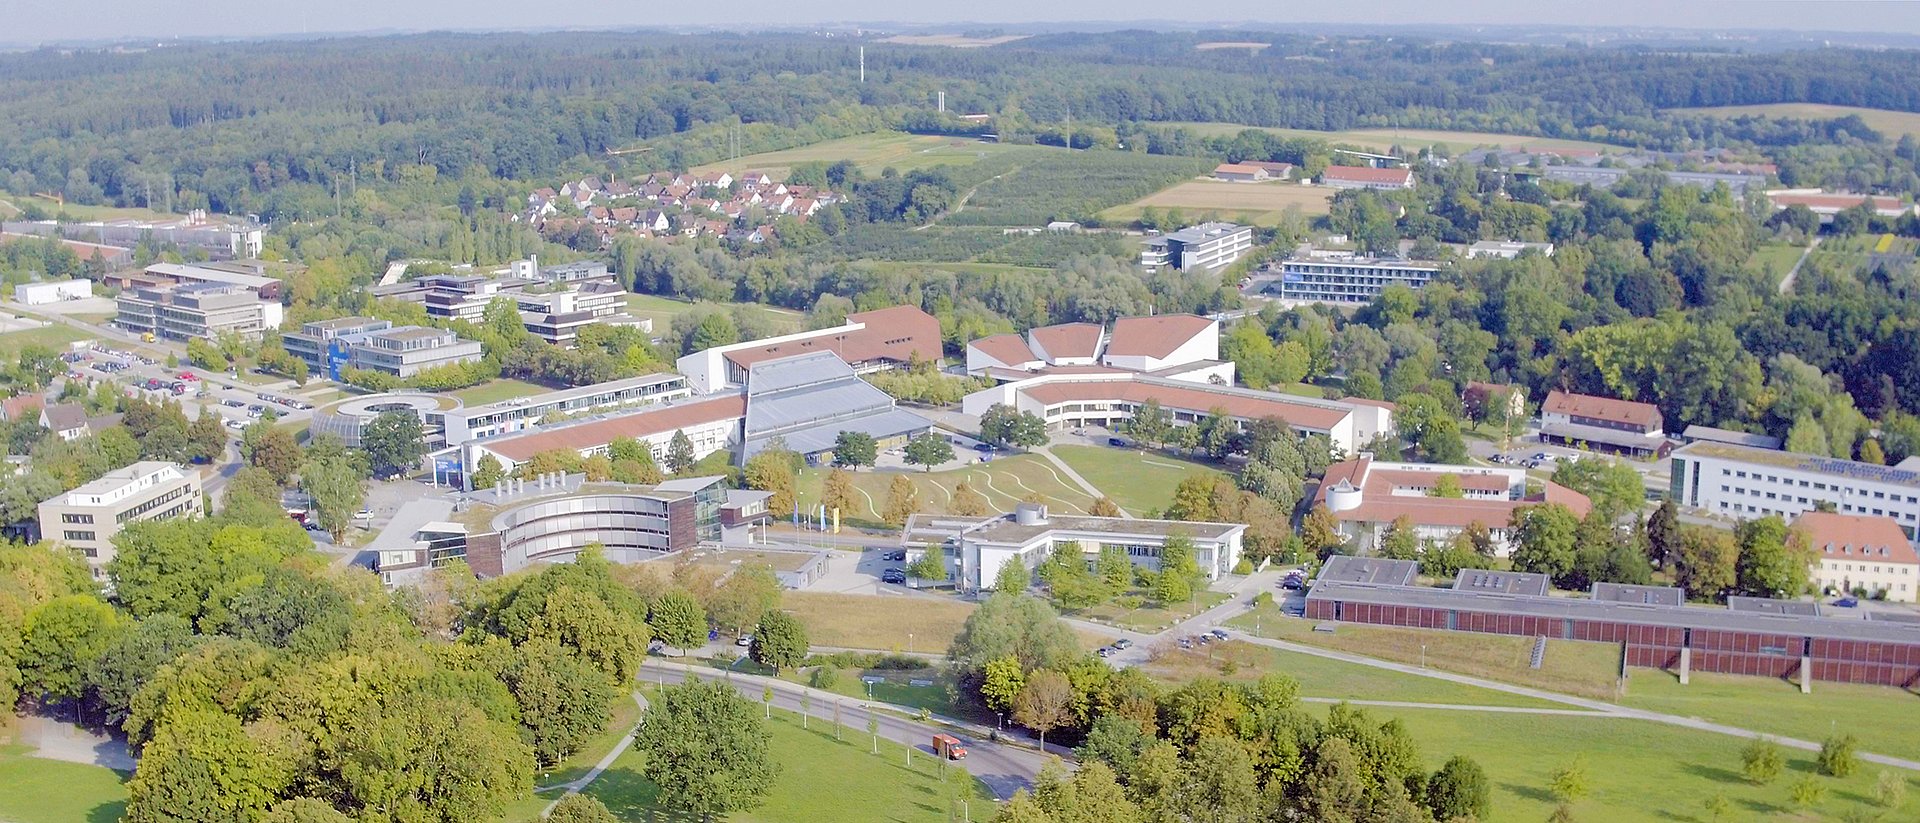 Luftbild des Campus Weihenstephan